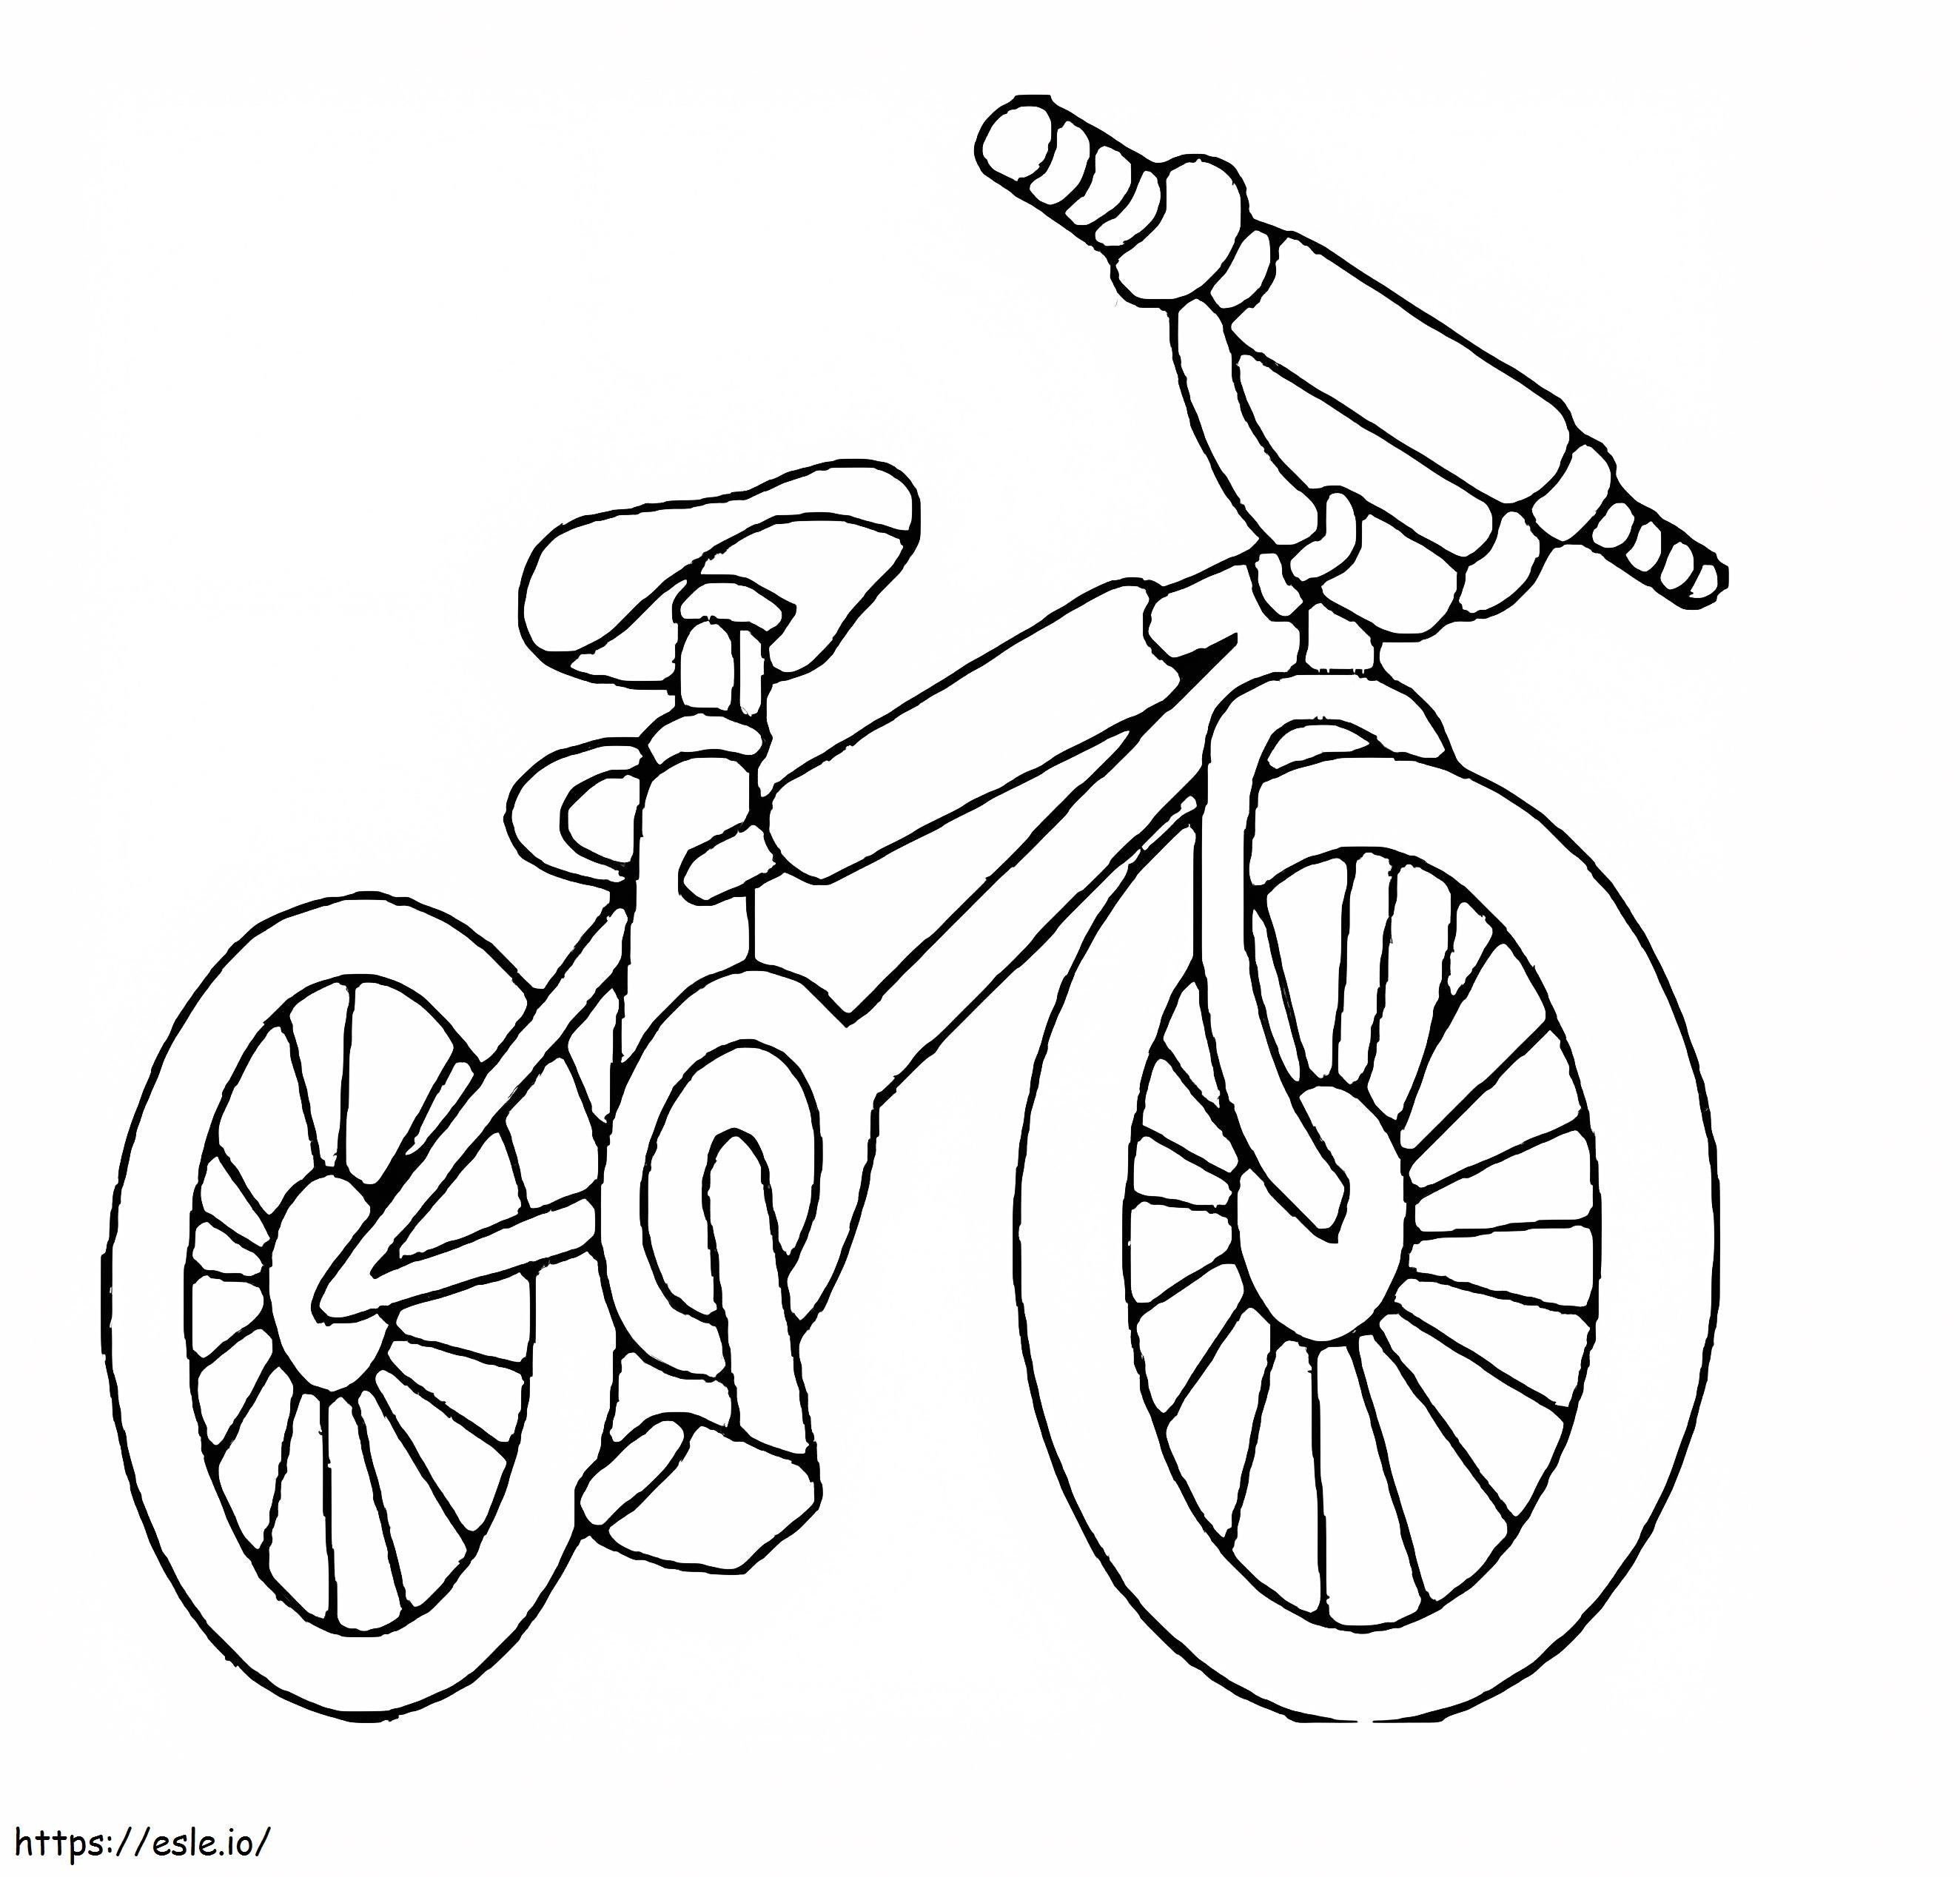 Coloriage Une bicyclette à imprimer dessin